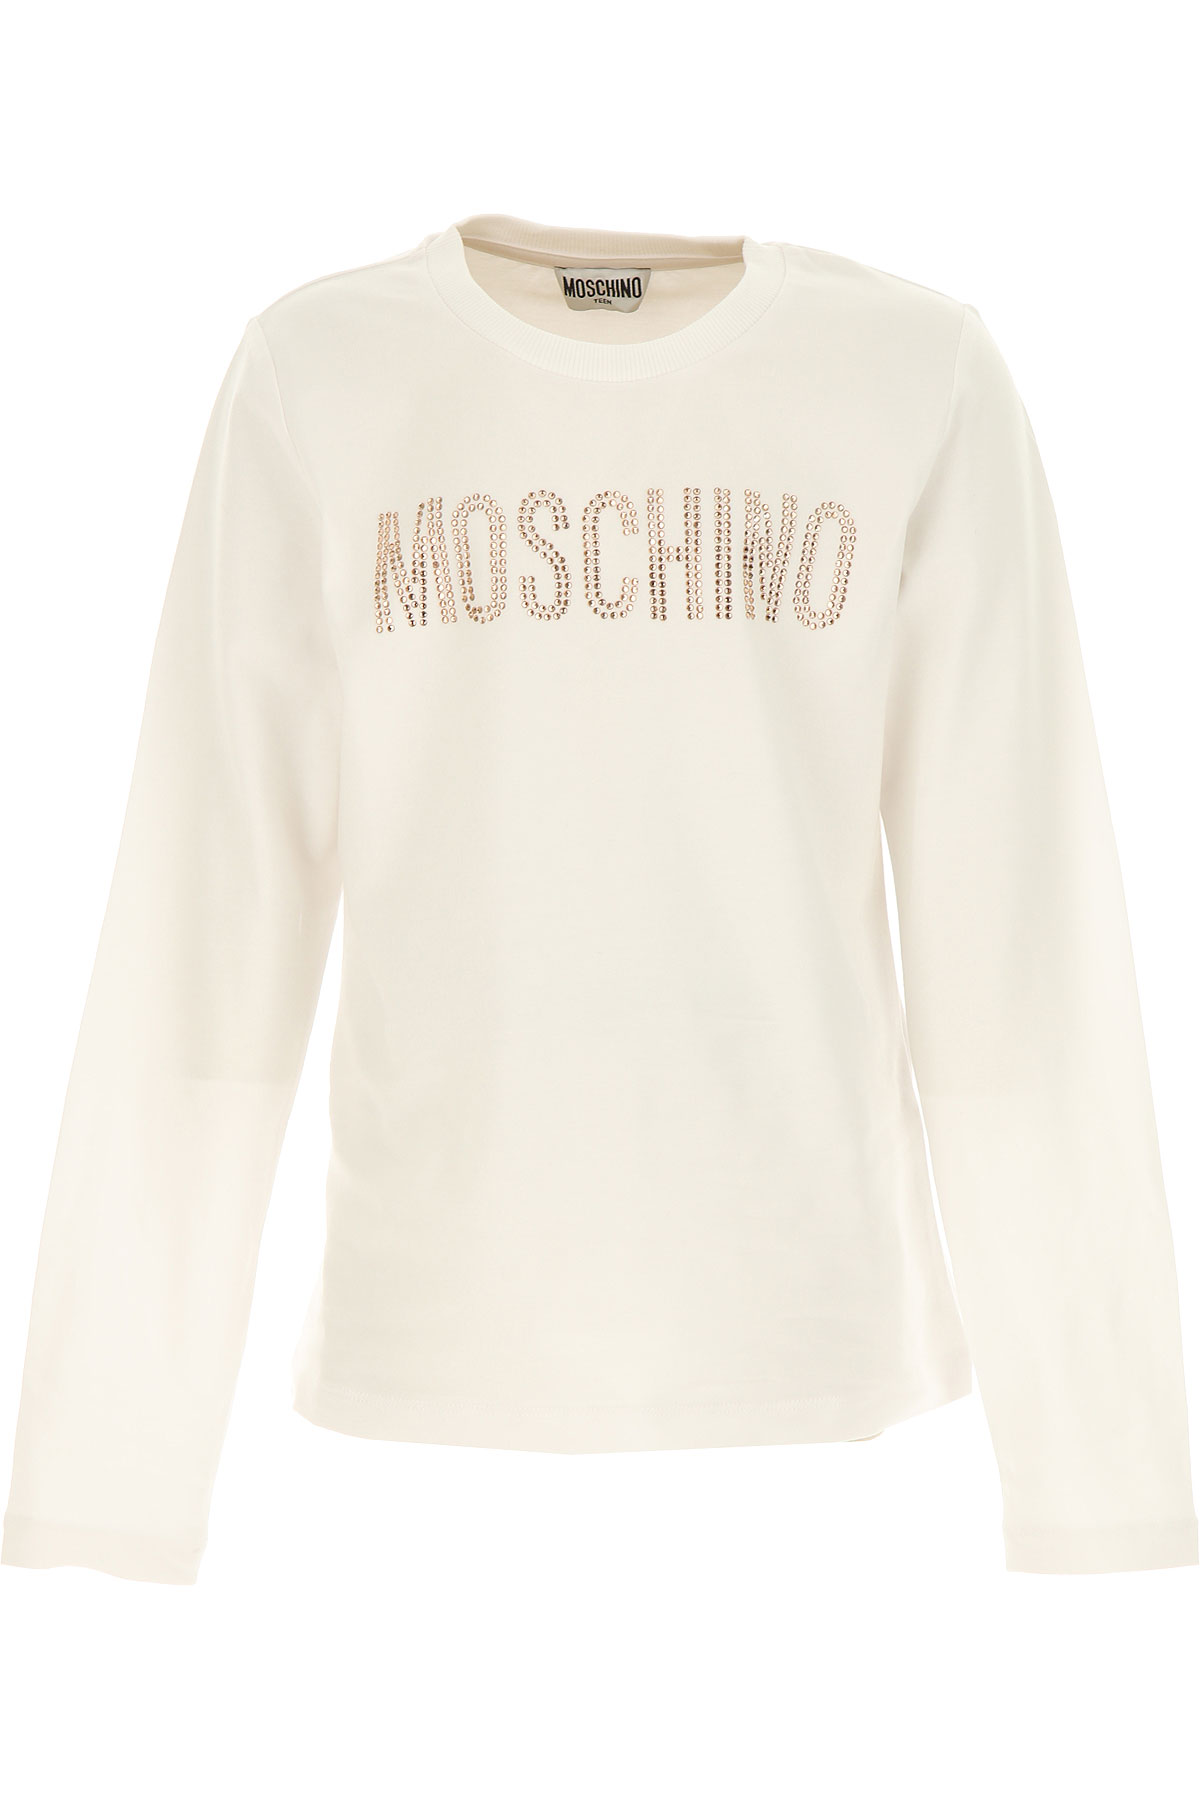 Moschino Kinder T-Shirt für Mädchen Günstig im Sale, Weiss, Baumwolle, 2017, 10Y 12Y 14Y 8Y